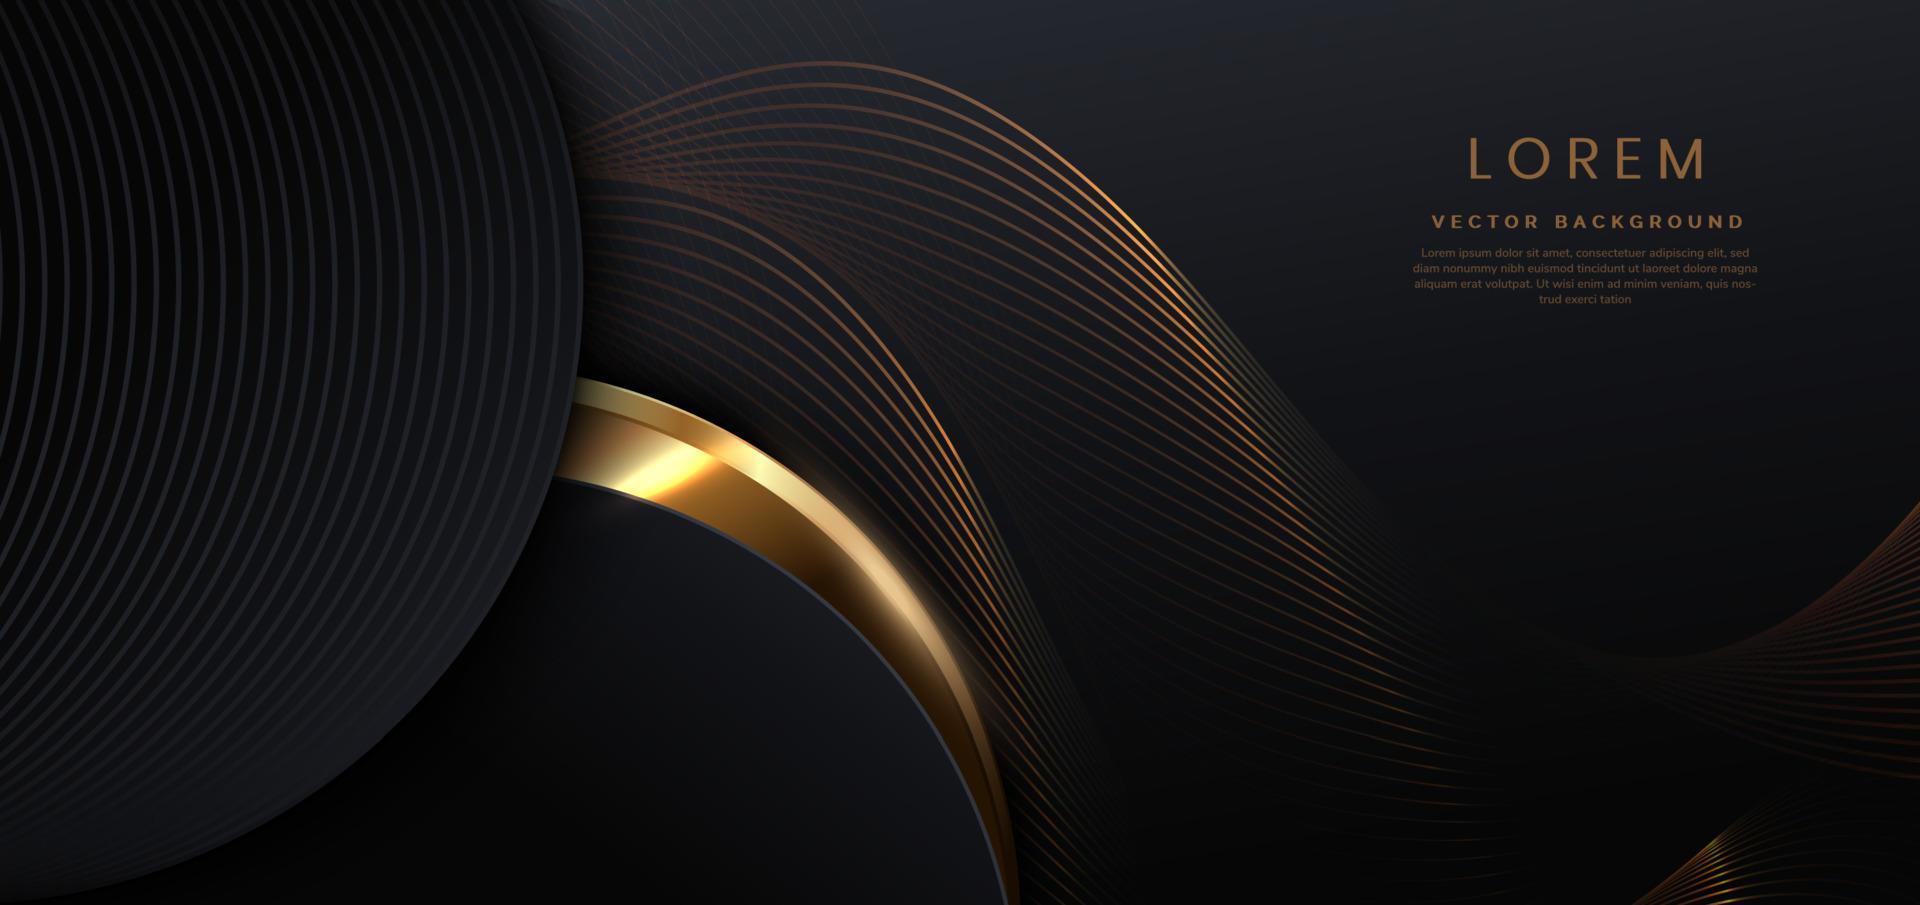 Curva negra de lujo 3d abstracta con líneas curvas doradas de borde elegante y efecto de iluminación sobre fondo negro. vector